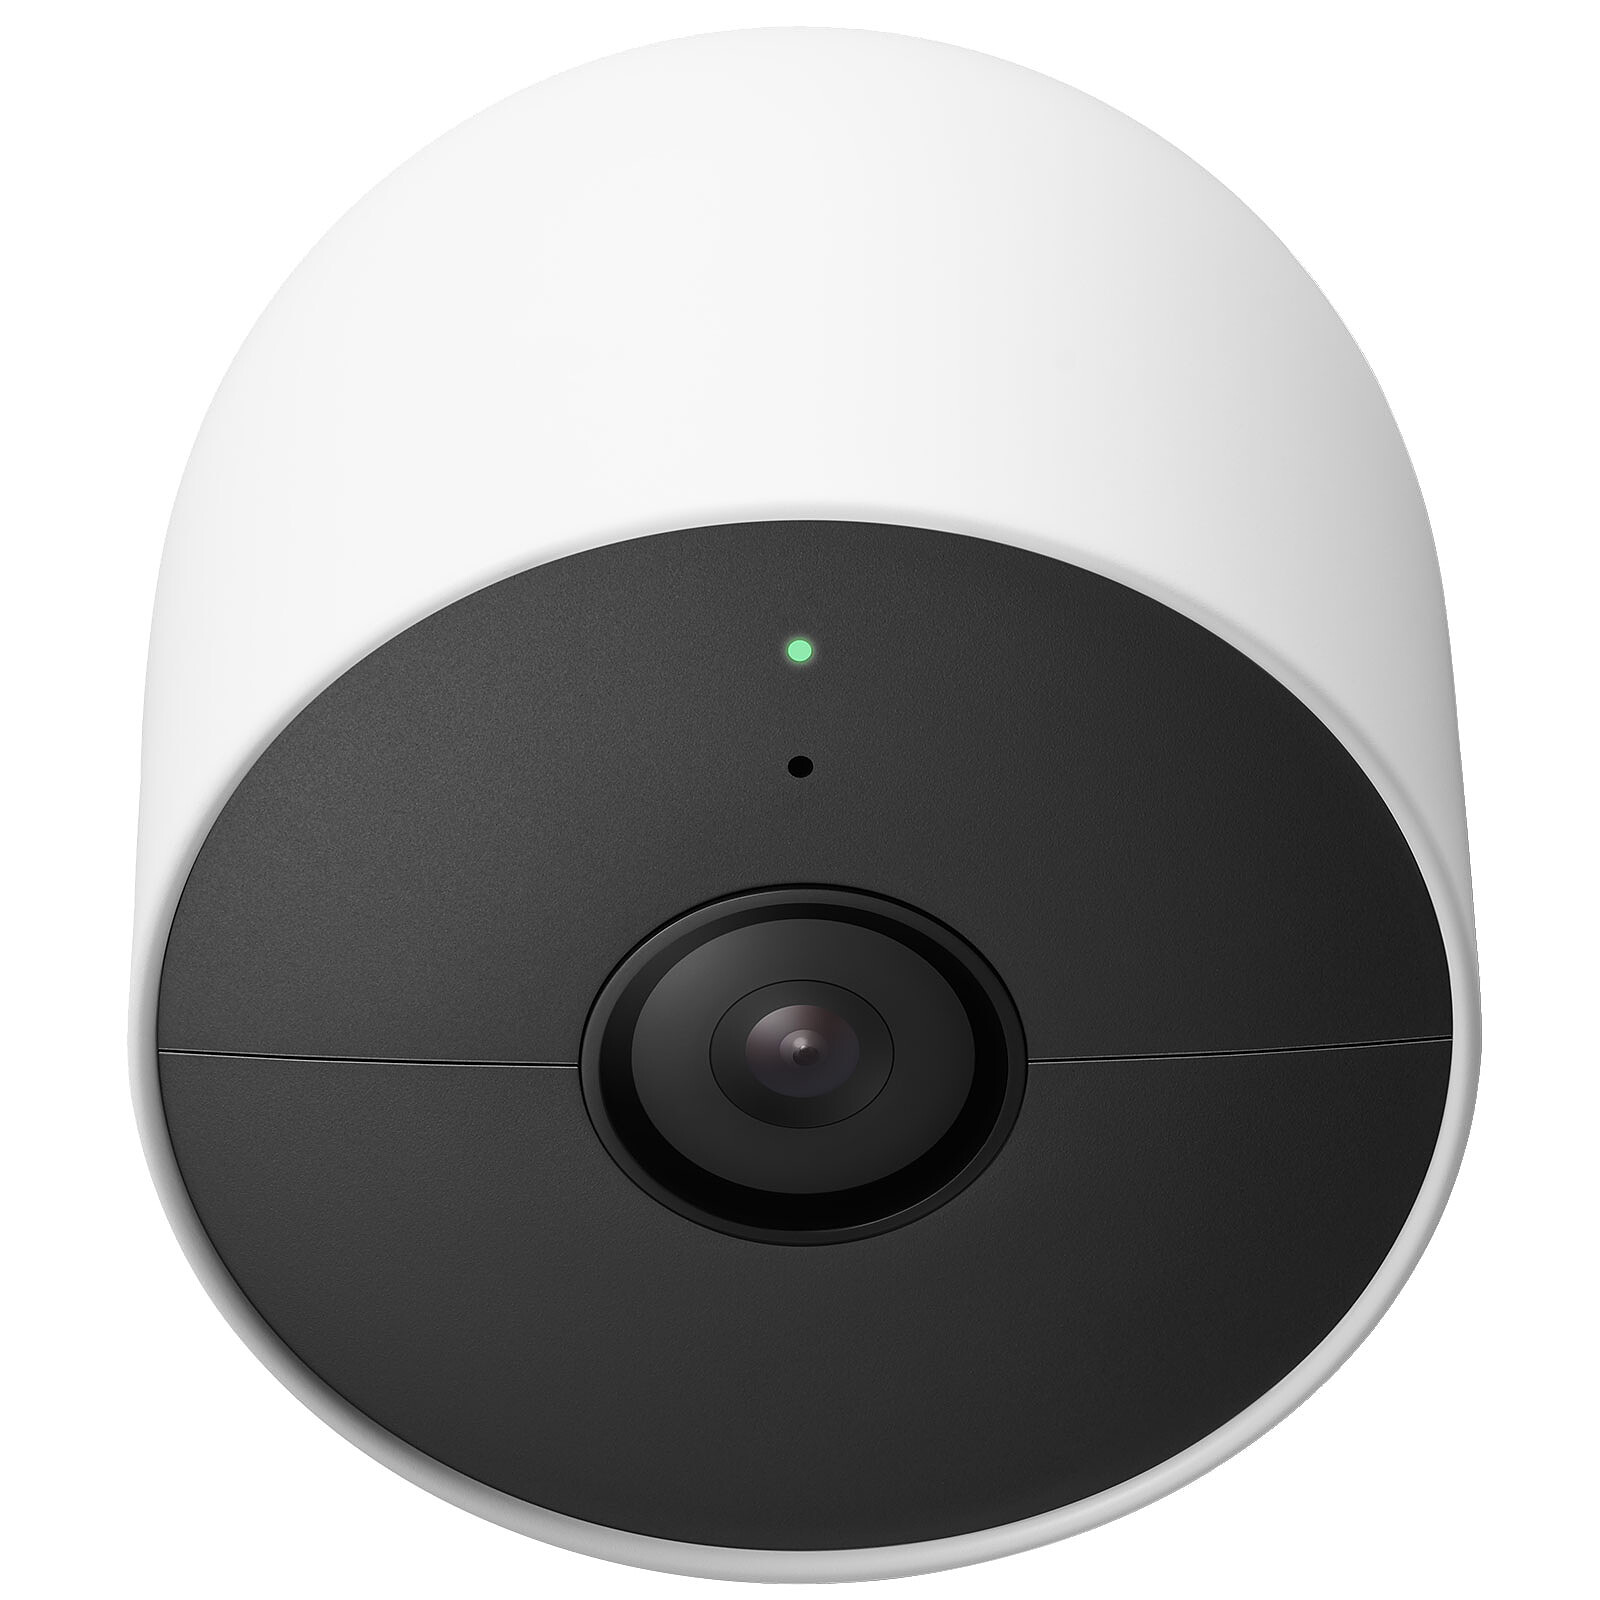 Google Nest Cam (Exterior o interior - Batería) - Cámara de vigilancia -  LDLC